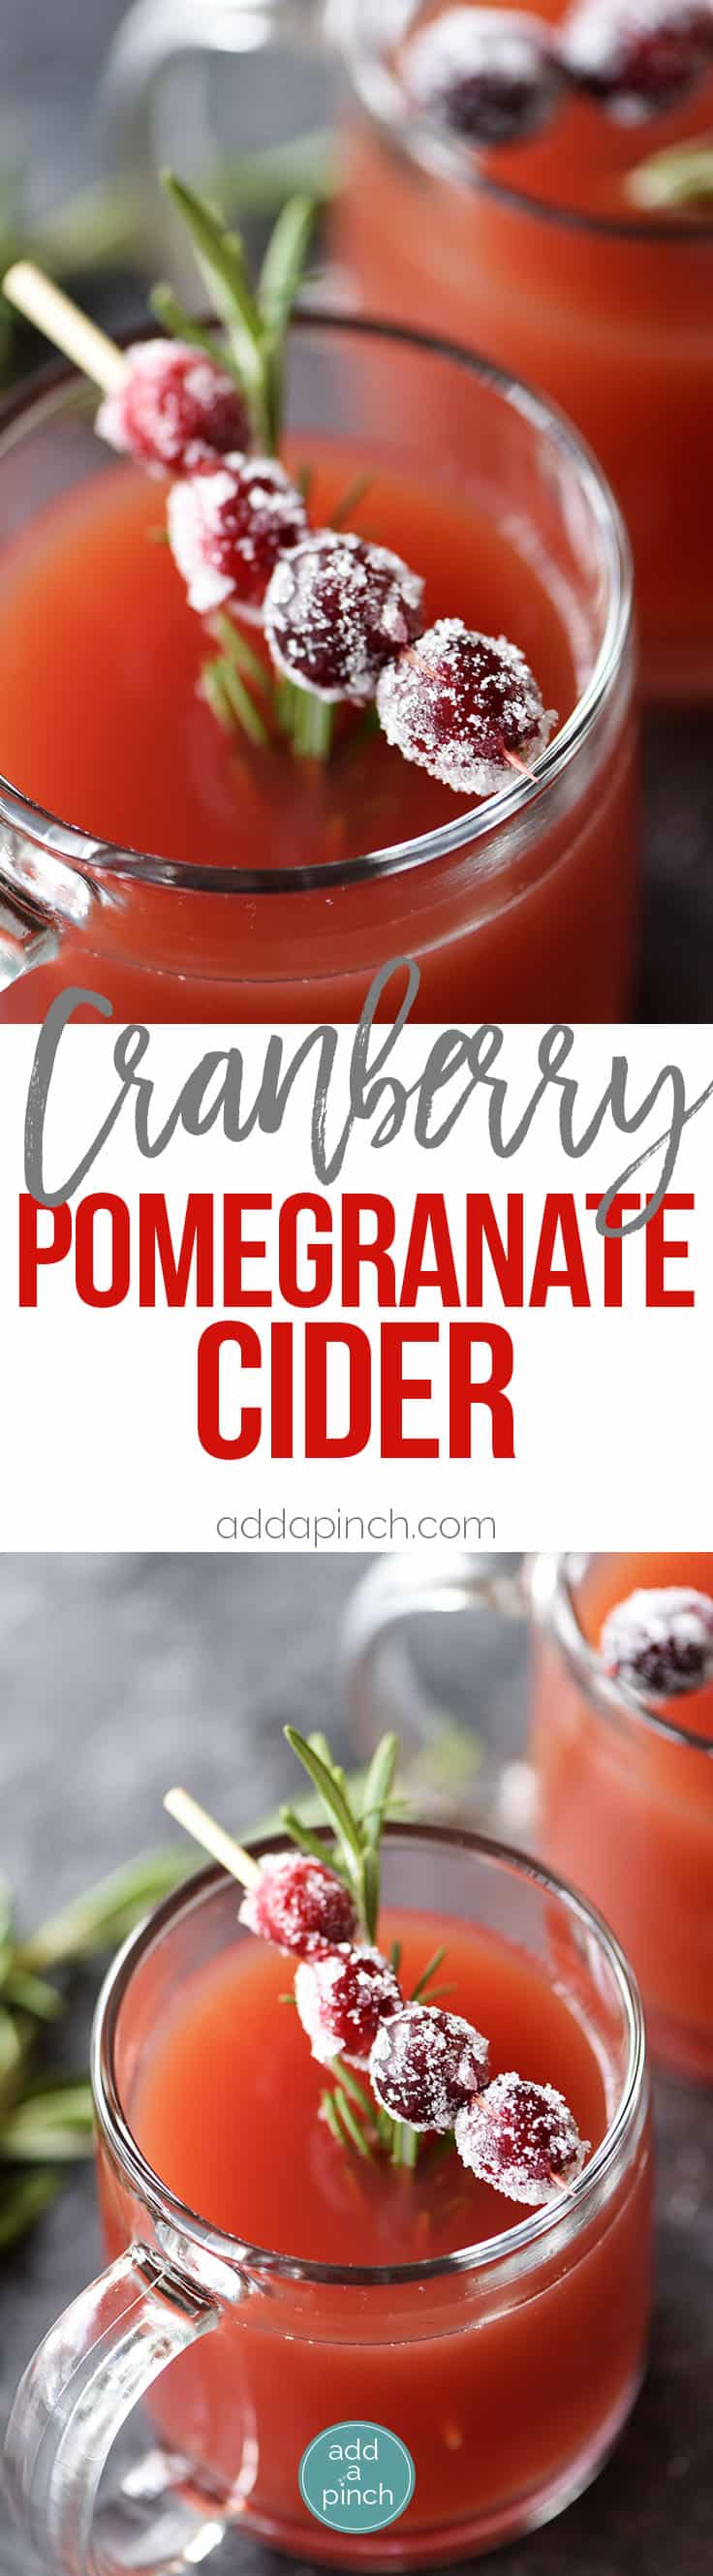 Warm Cranberry granaatappel Cider Recept - dit snelle en gemakkelijke warme cranberry granaatappel cider recept maakt de perfecte slok om warm en gezellig te blijven! // addapinch.com